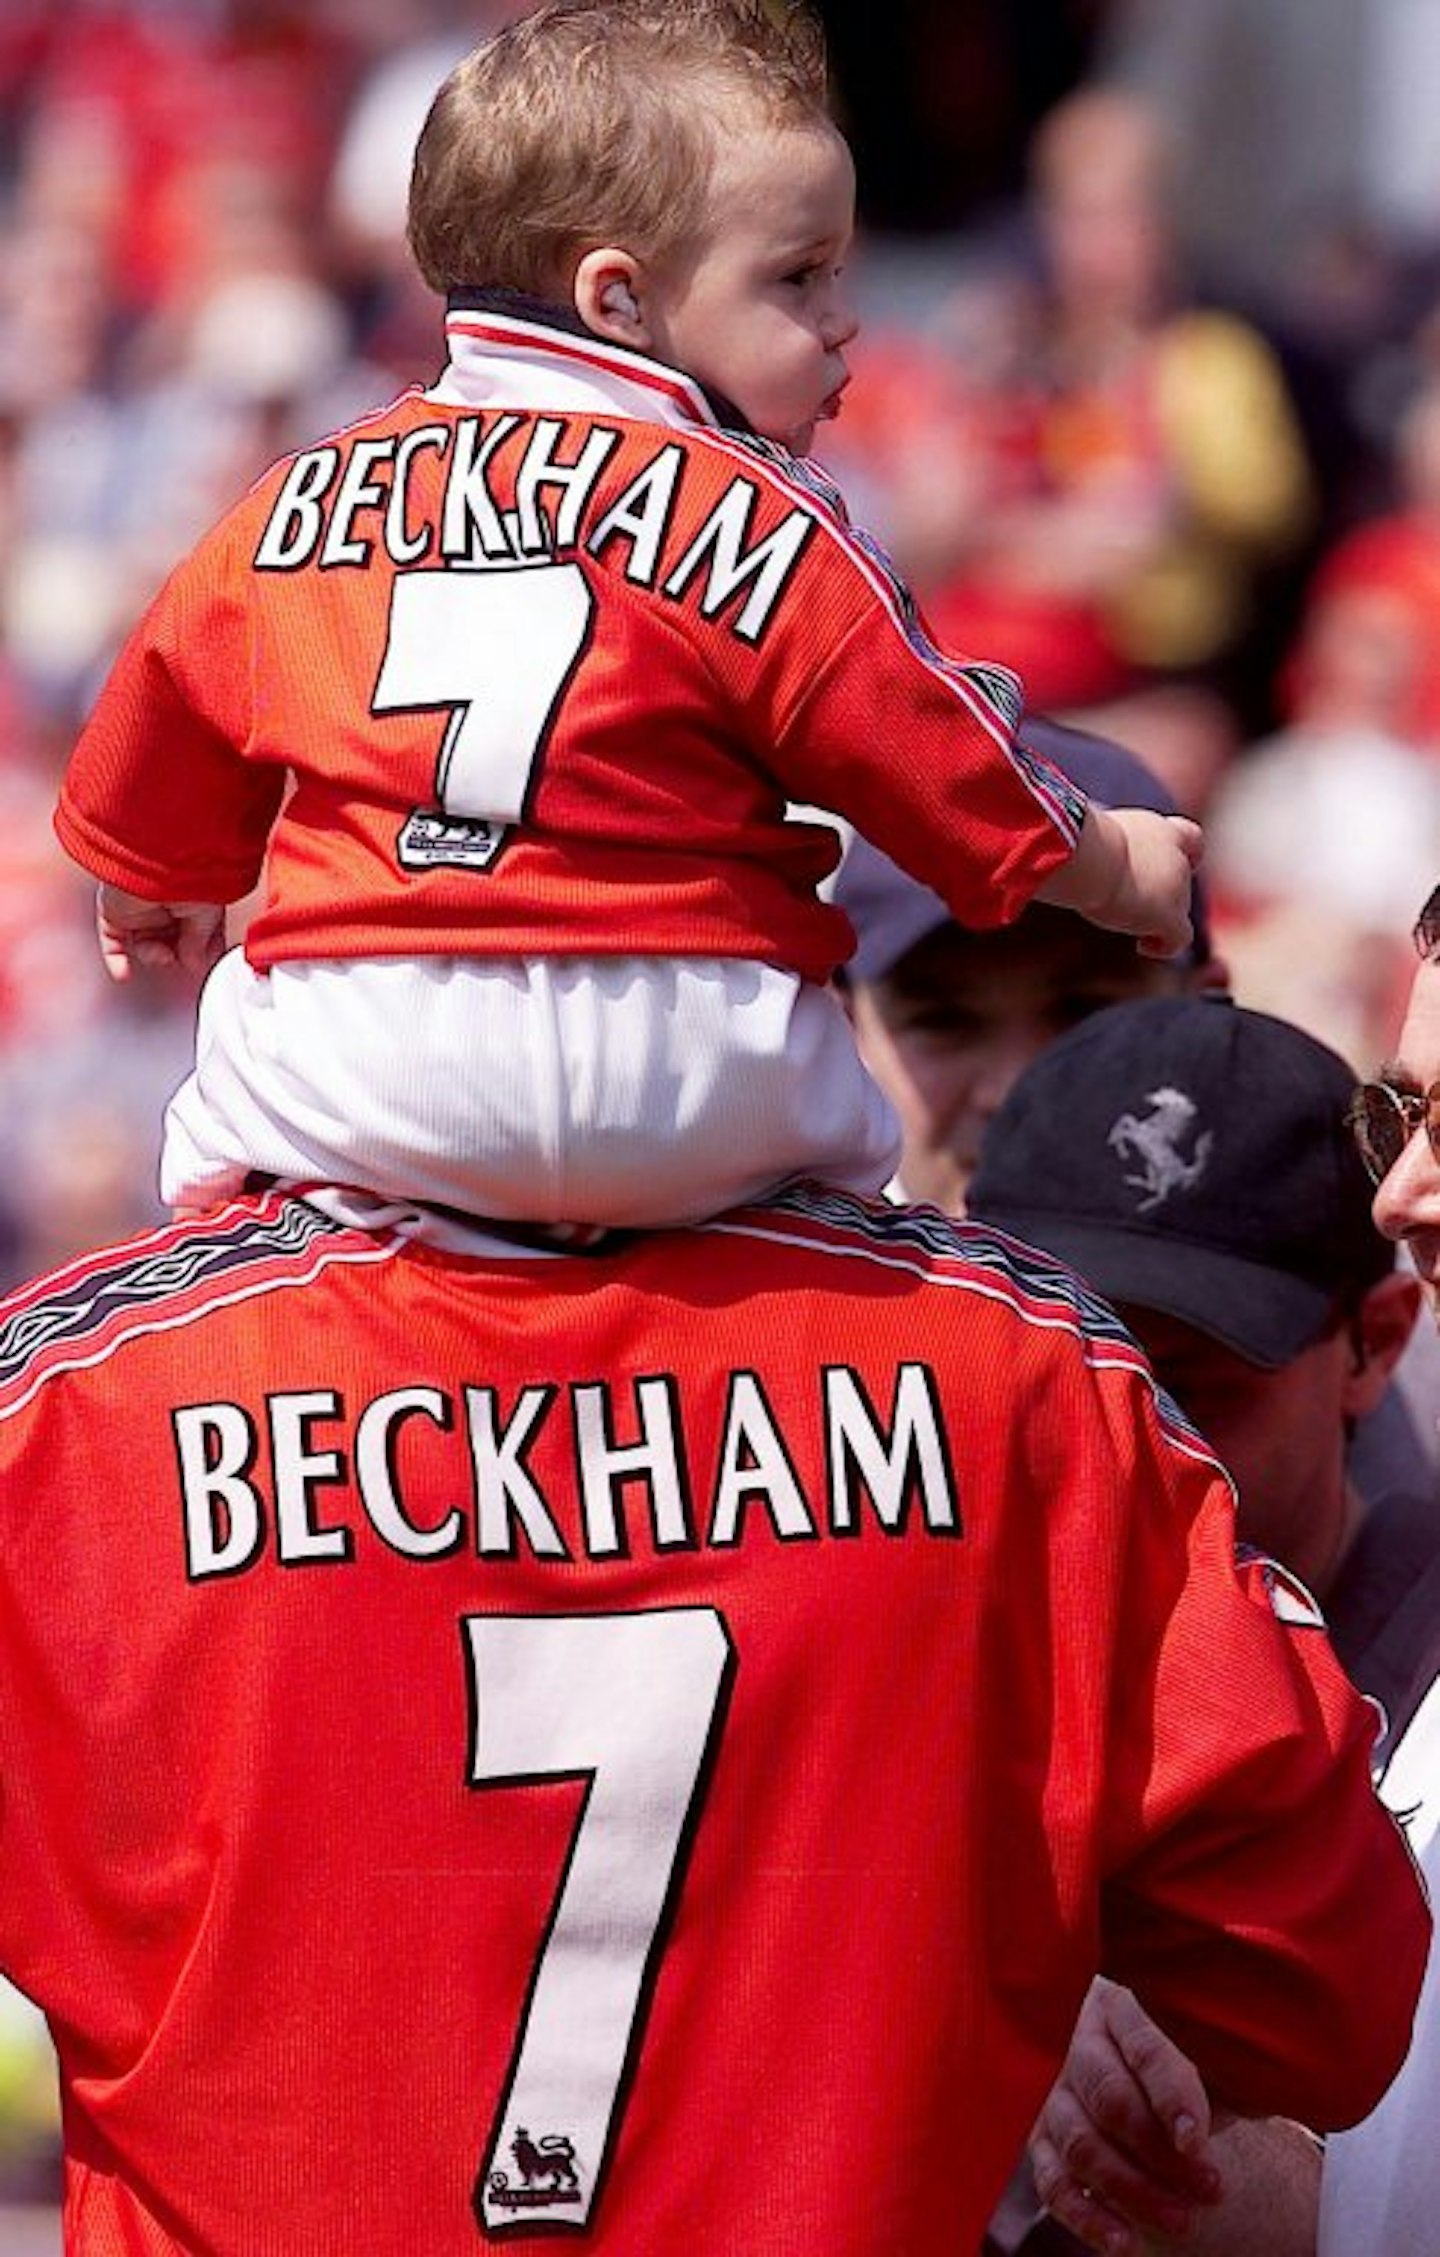 The Beckhams